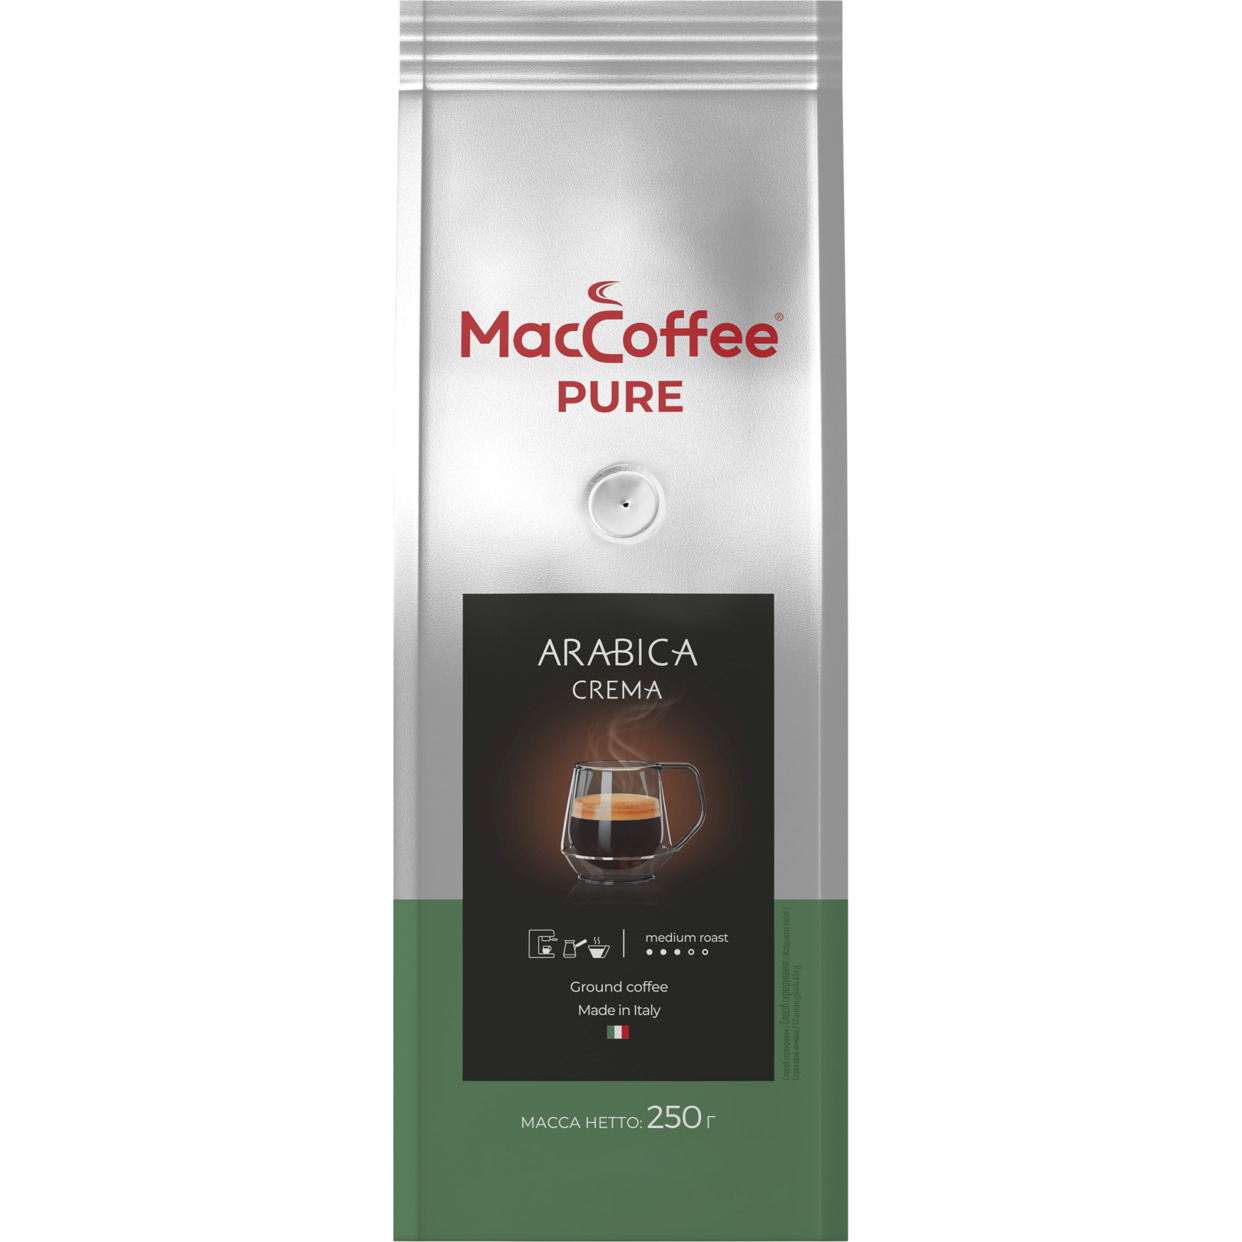 Кофе MACCOFFEE Pure Arabica Crema жареный молотый натуральный 250г по акции в Пятерочке